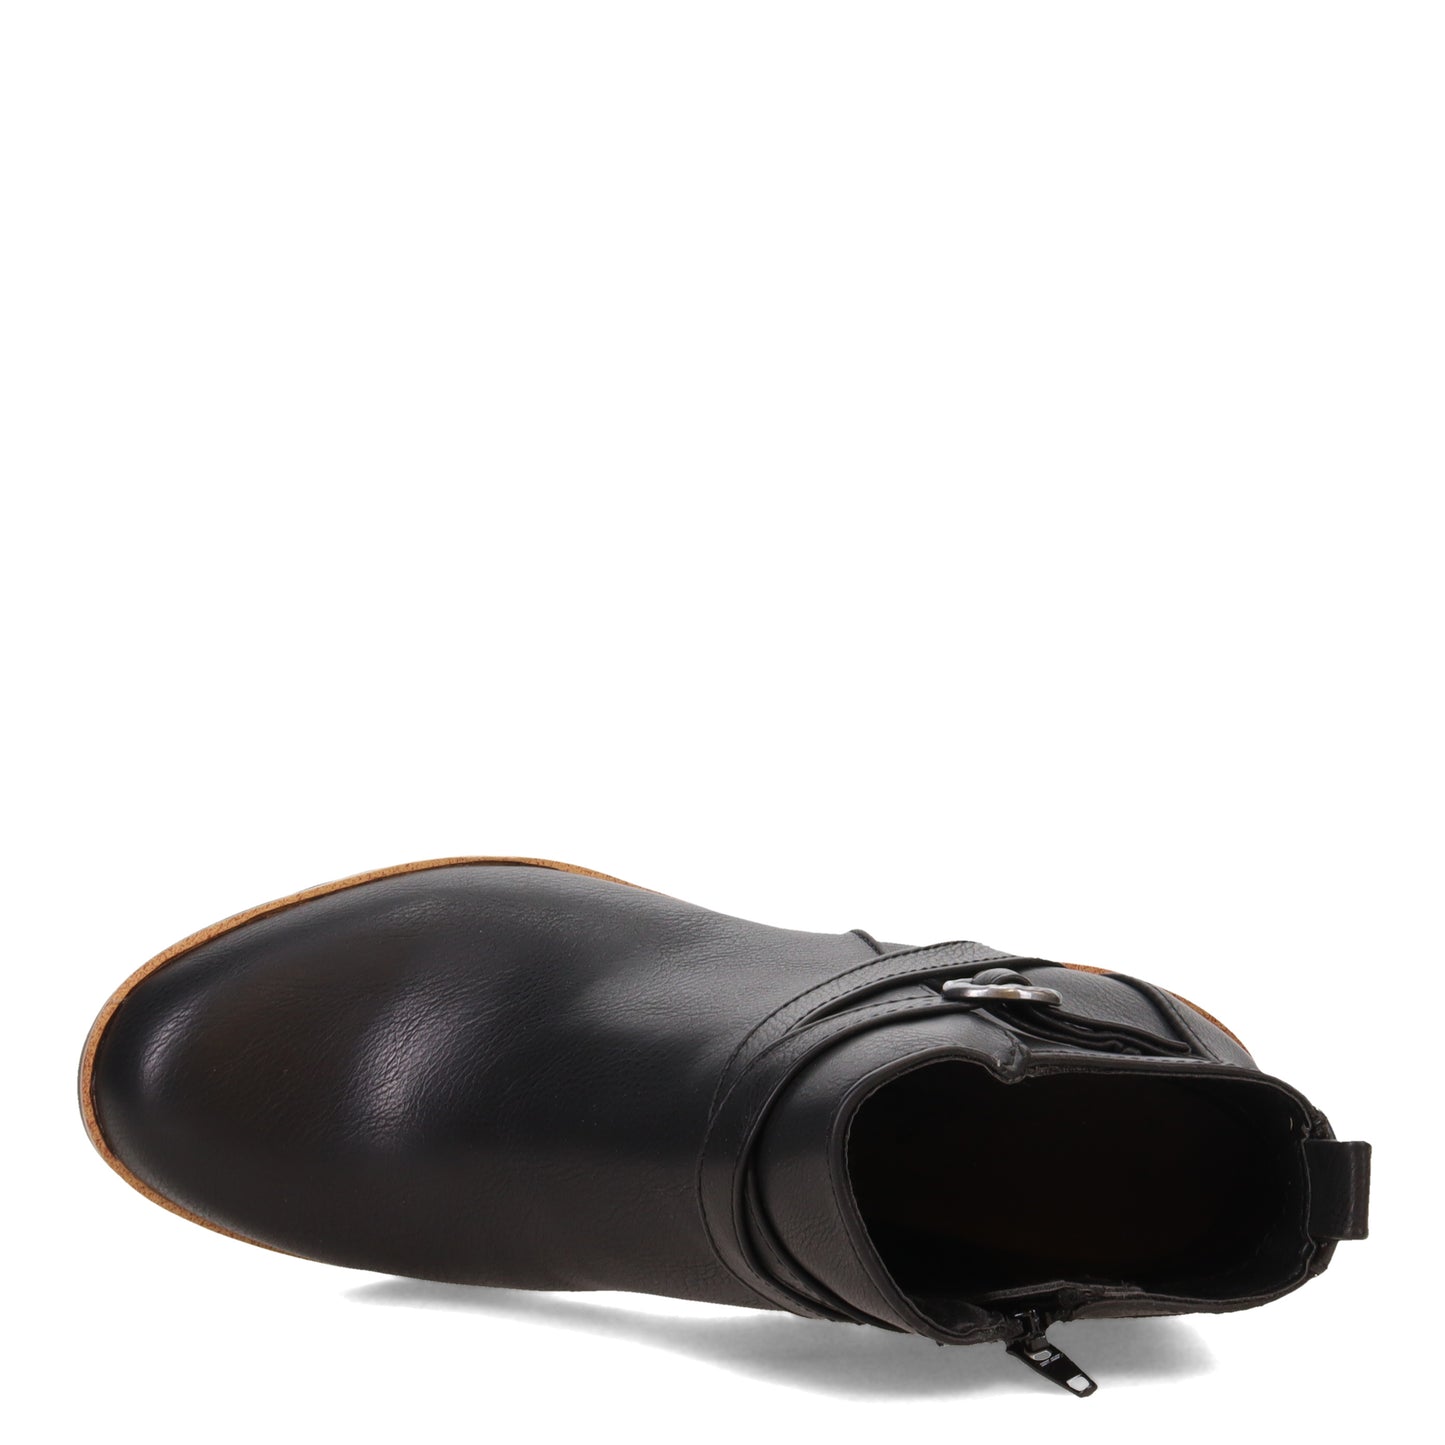 Peltz Shoes  Women's LifeStride Zinfandel Bootie BLACK I1940S1002